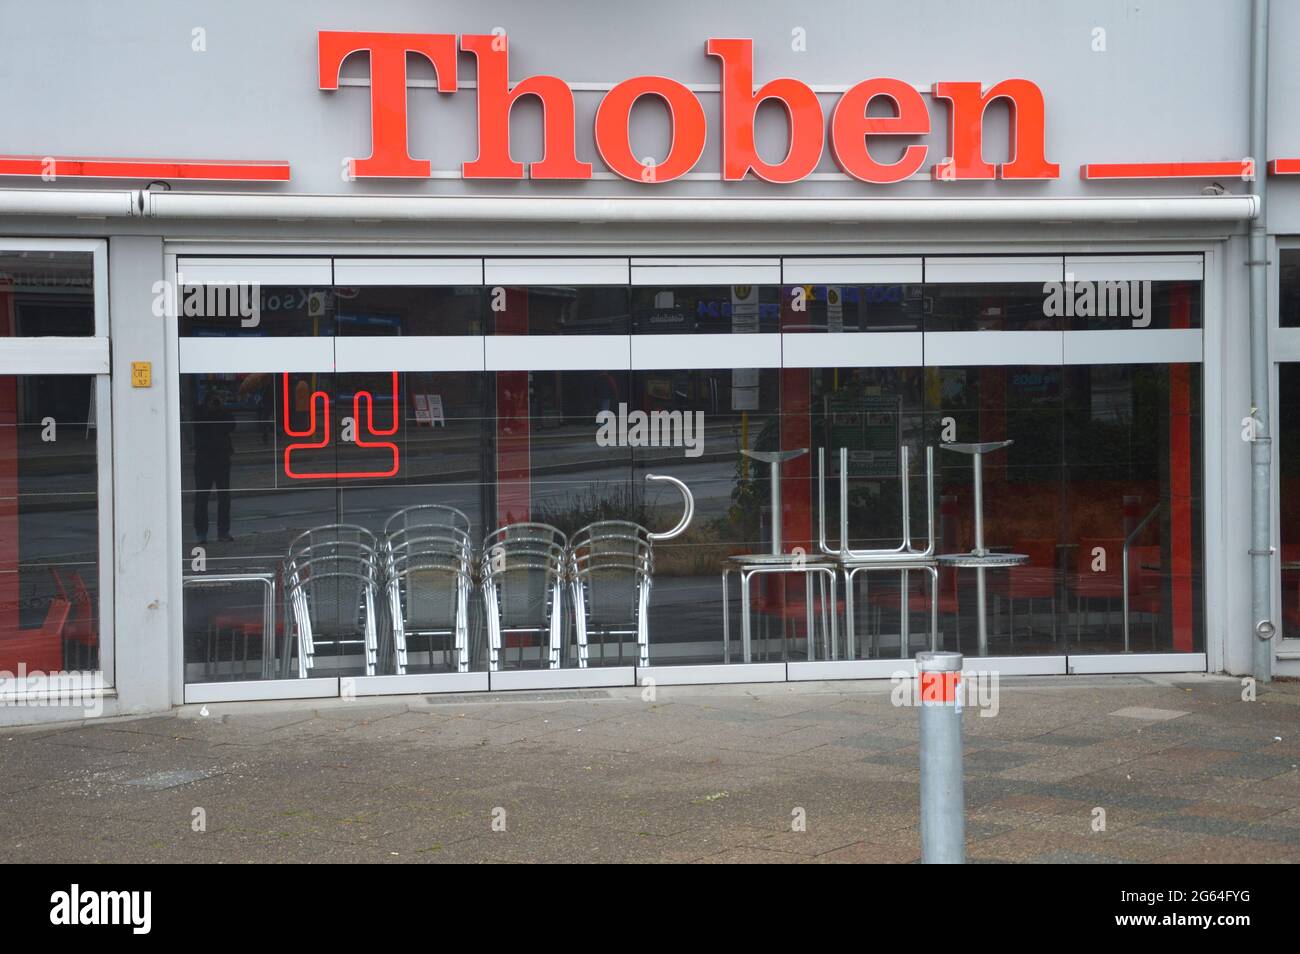 Bäckerei und Café Thoben in Steglitz, Berlin, Deutschland - 2021. Stockfoto